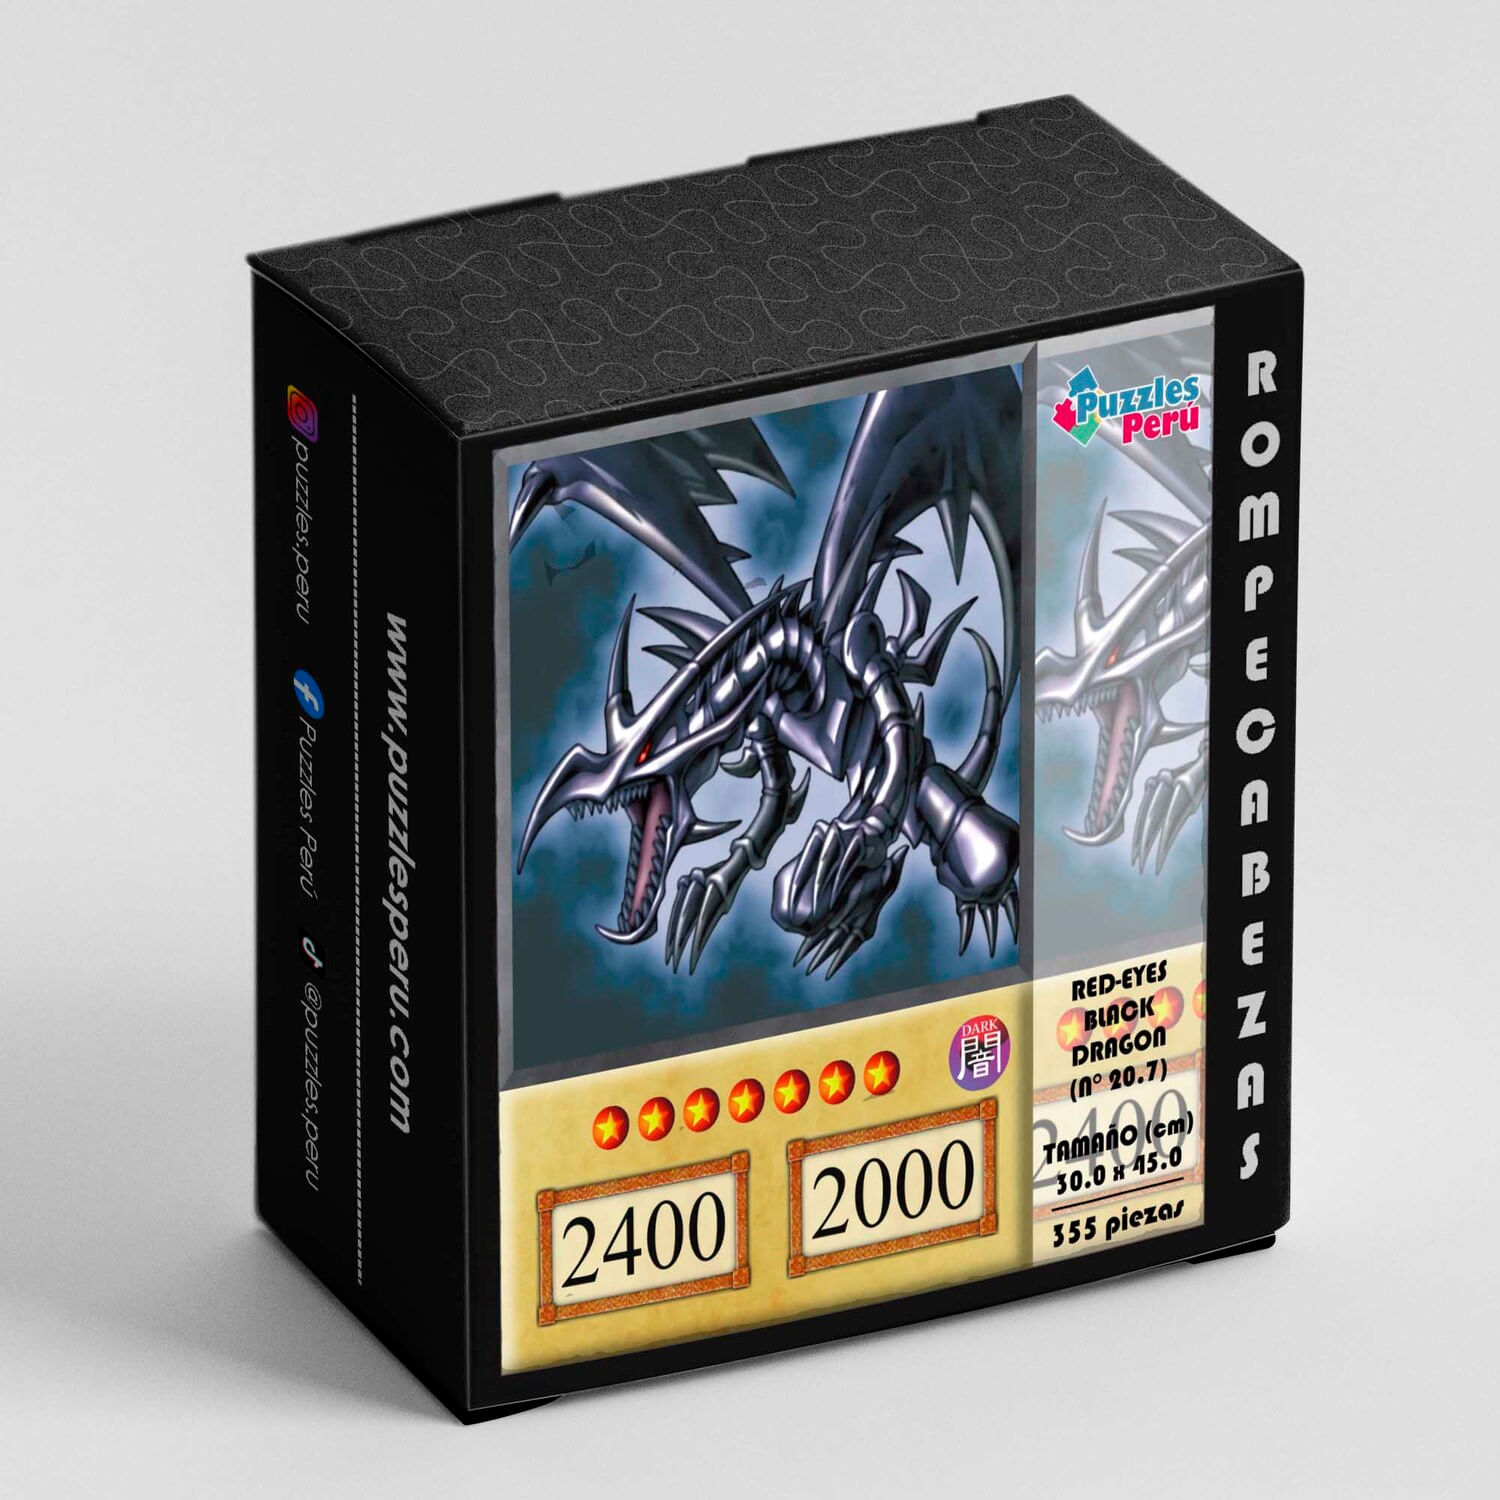 Rompecabezas Pers Red-Eyes black dragon de 355 Piezas C 20 7 Puzzles Peru